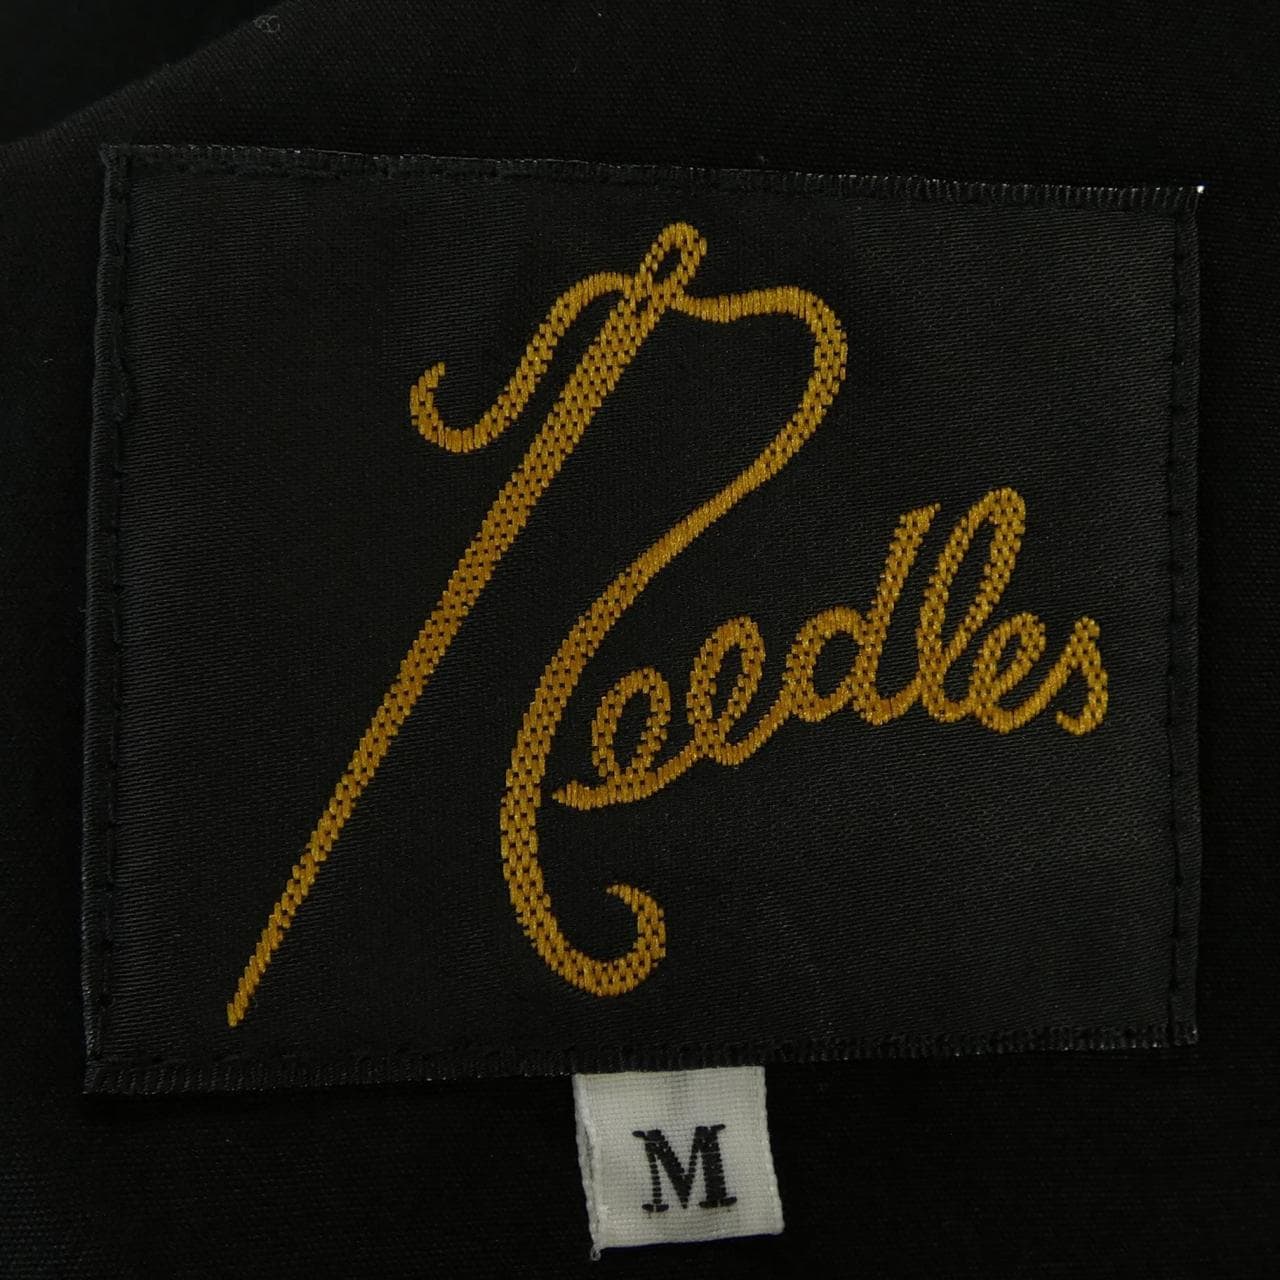 NEEDLES jacket